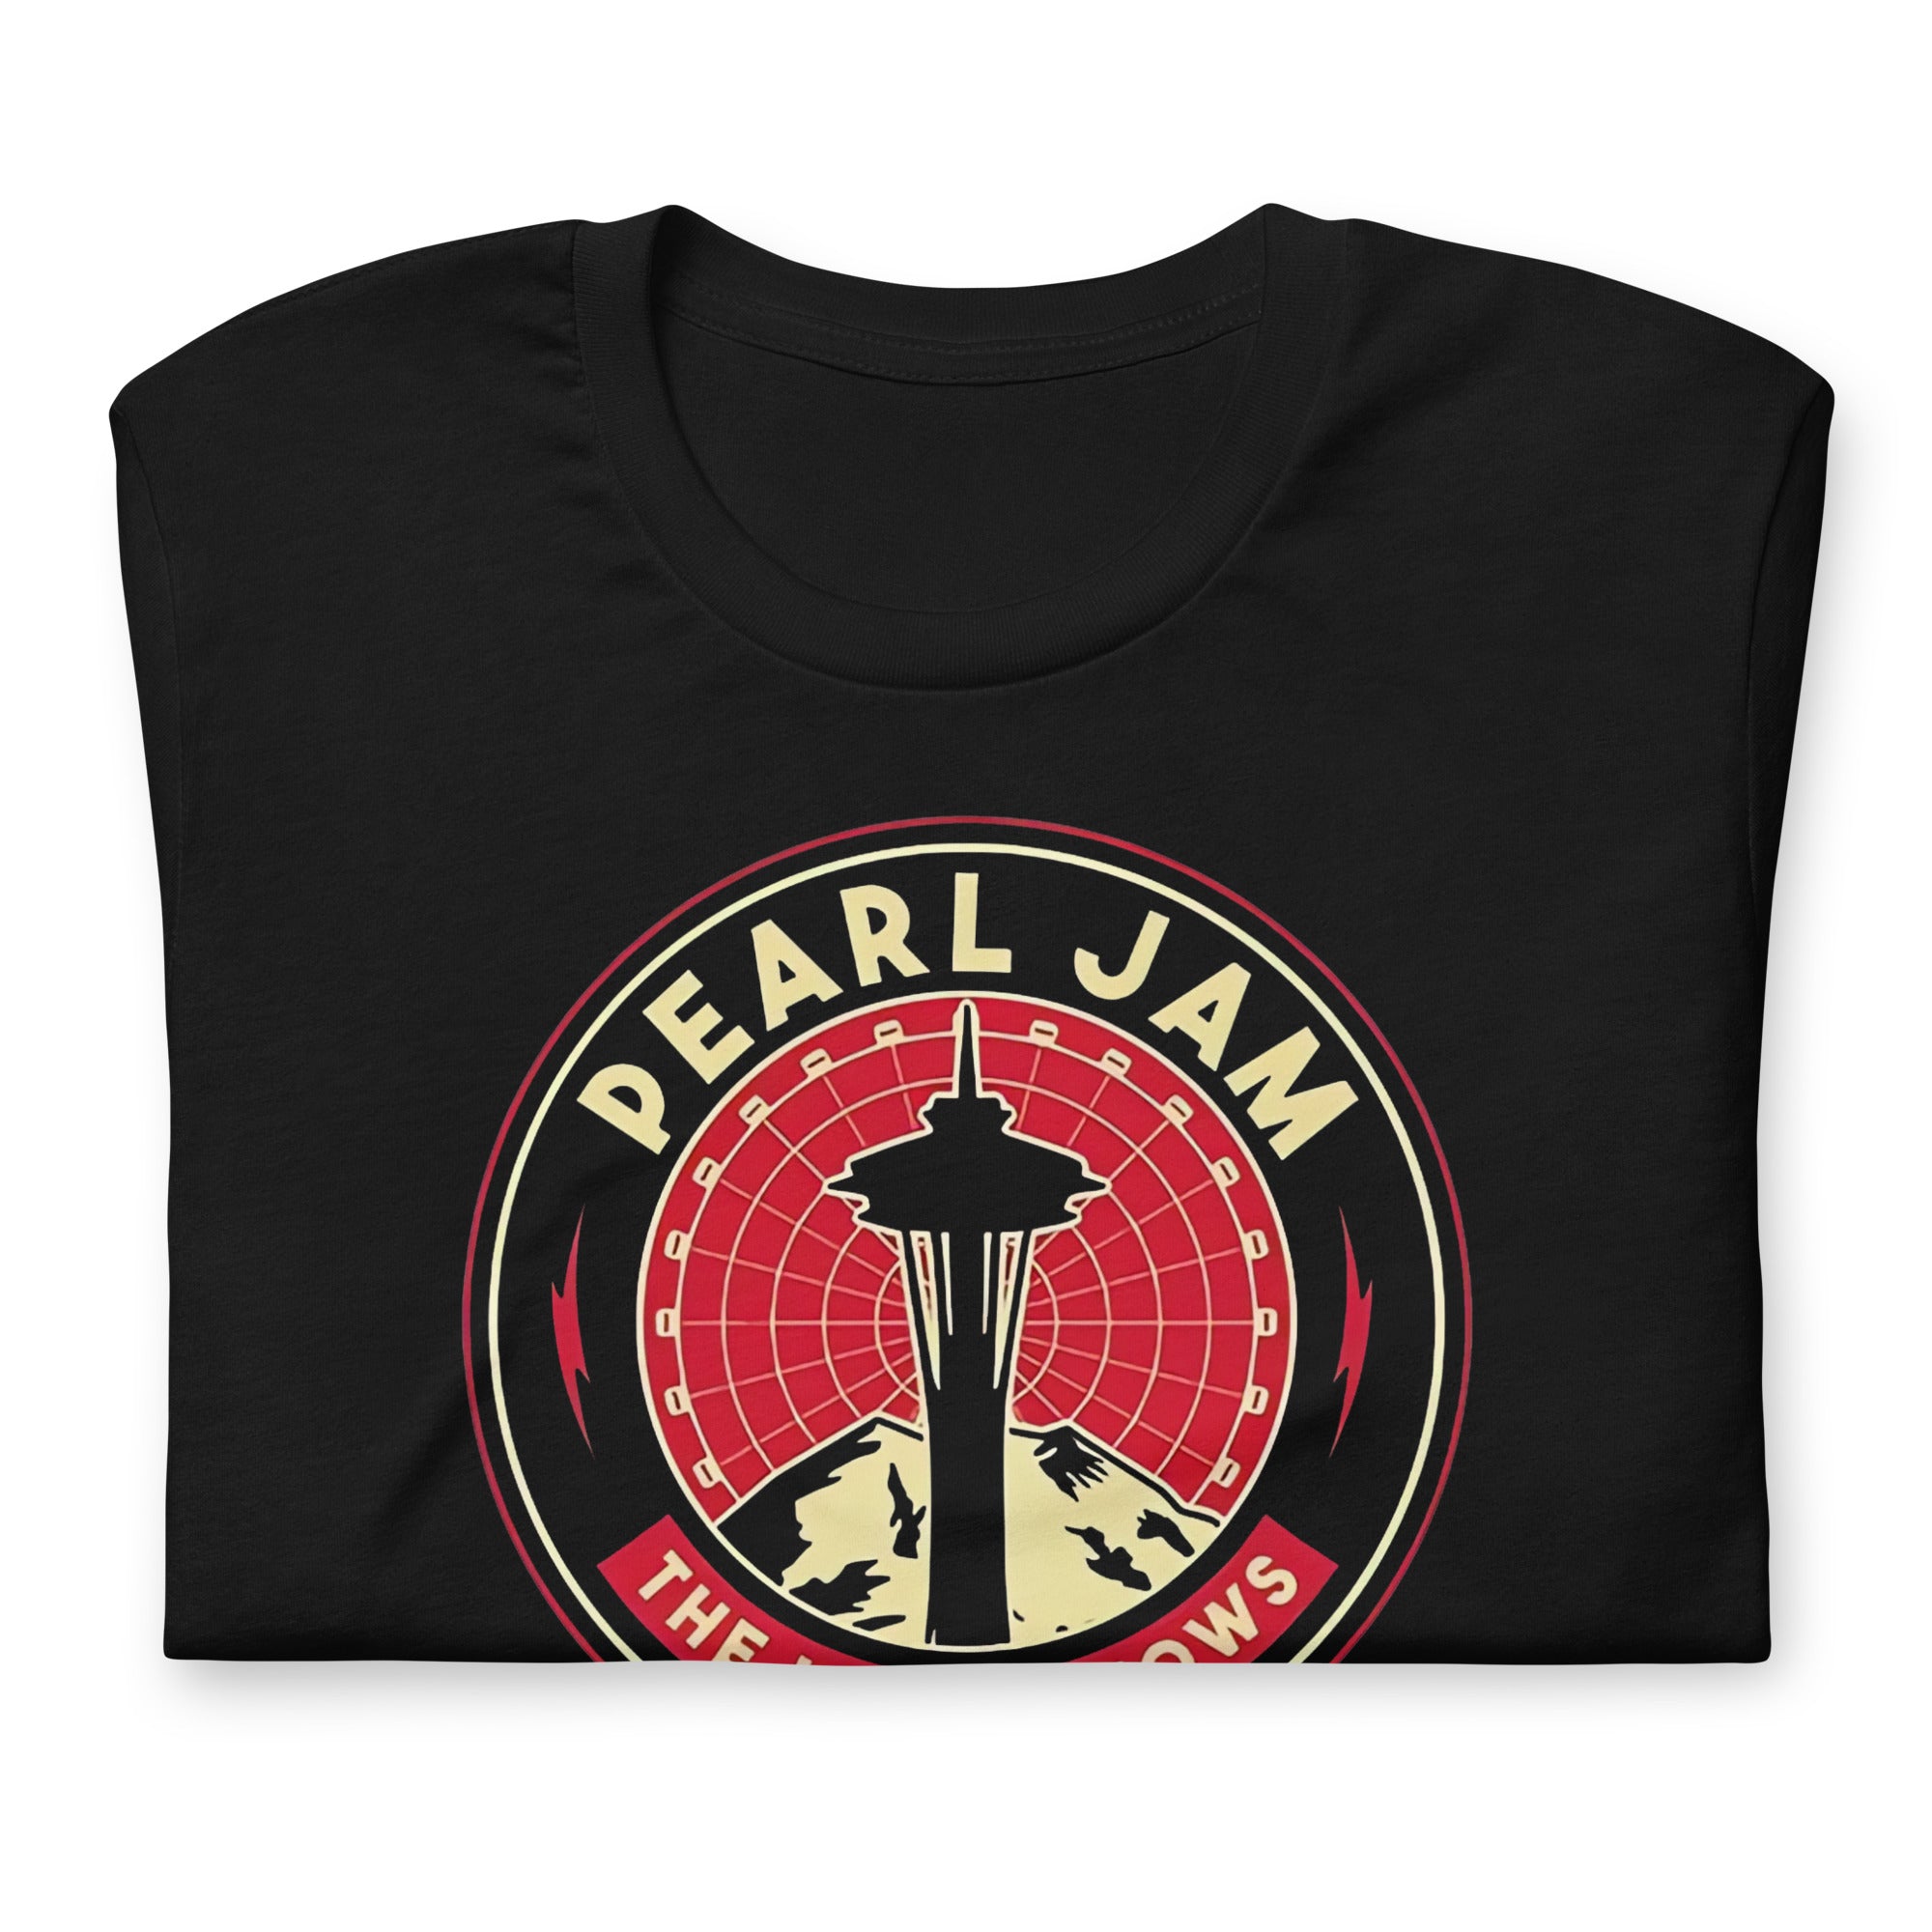 ¡Compra el mejor merchandising en Superstar! Encuentra diseños únicos y de alta calidad, Playera de Pearl Jam The Home Shows 